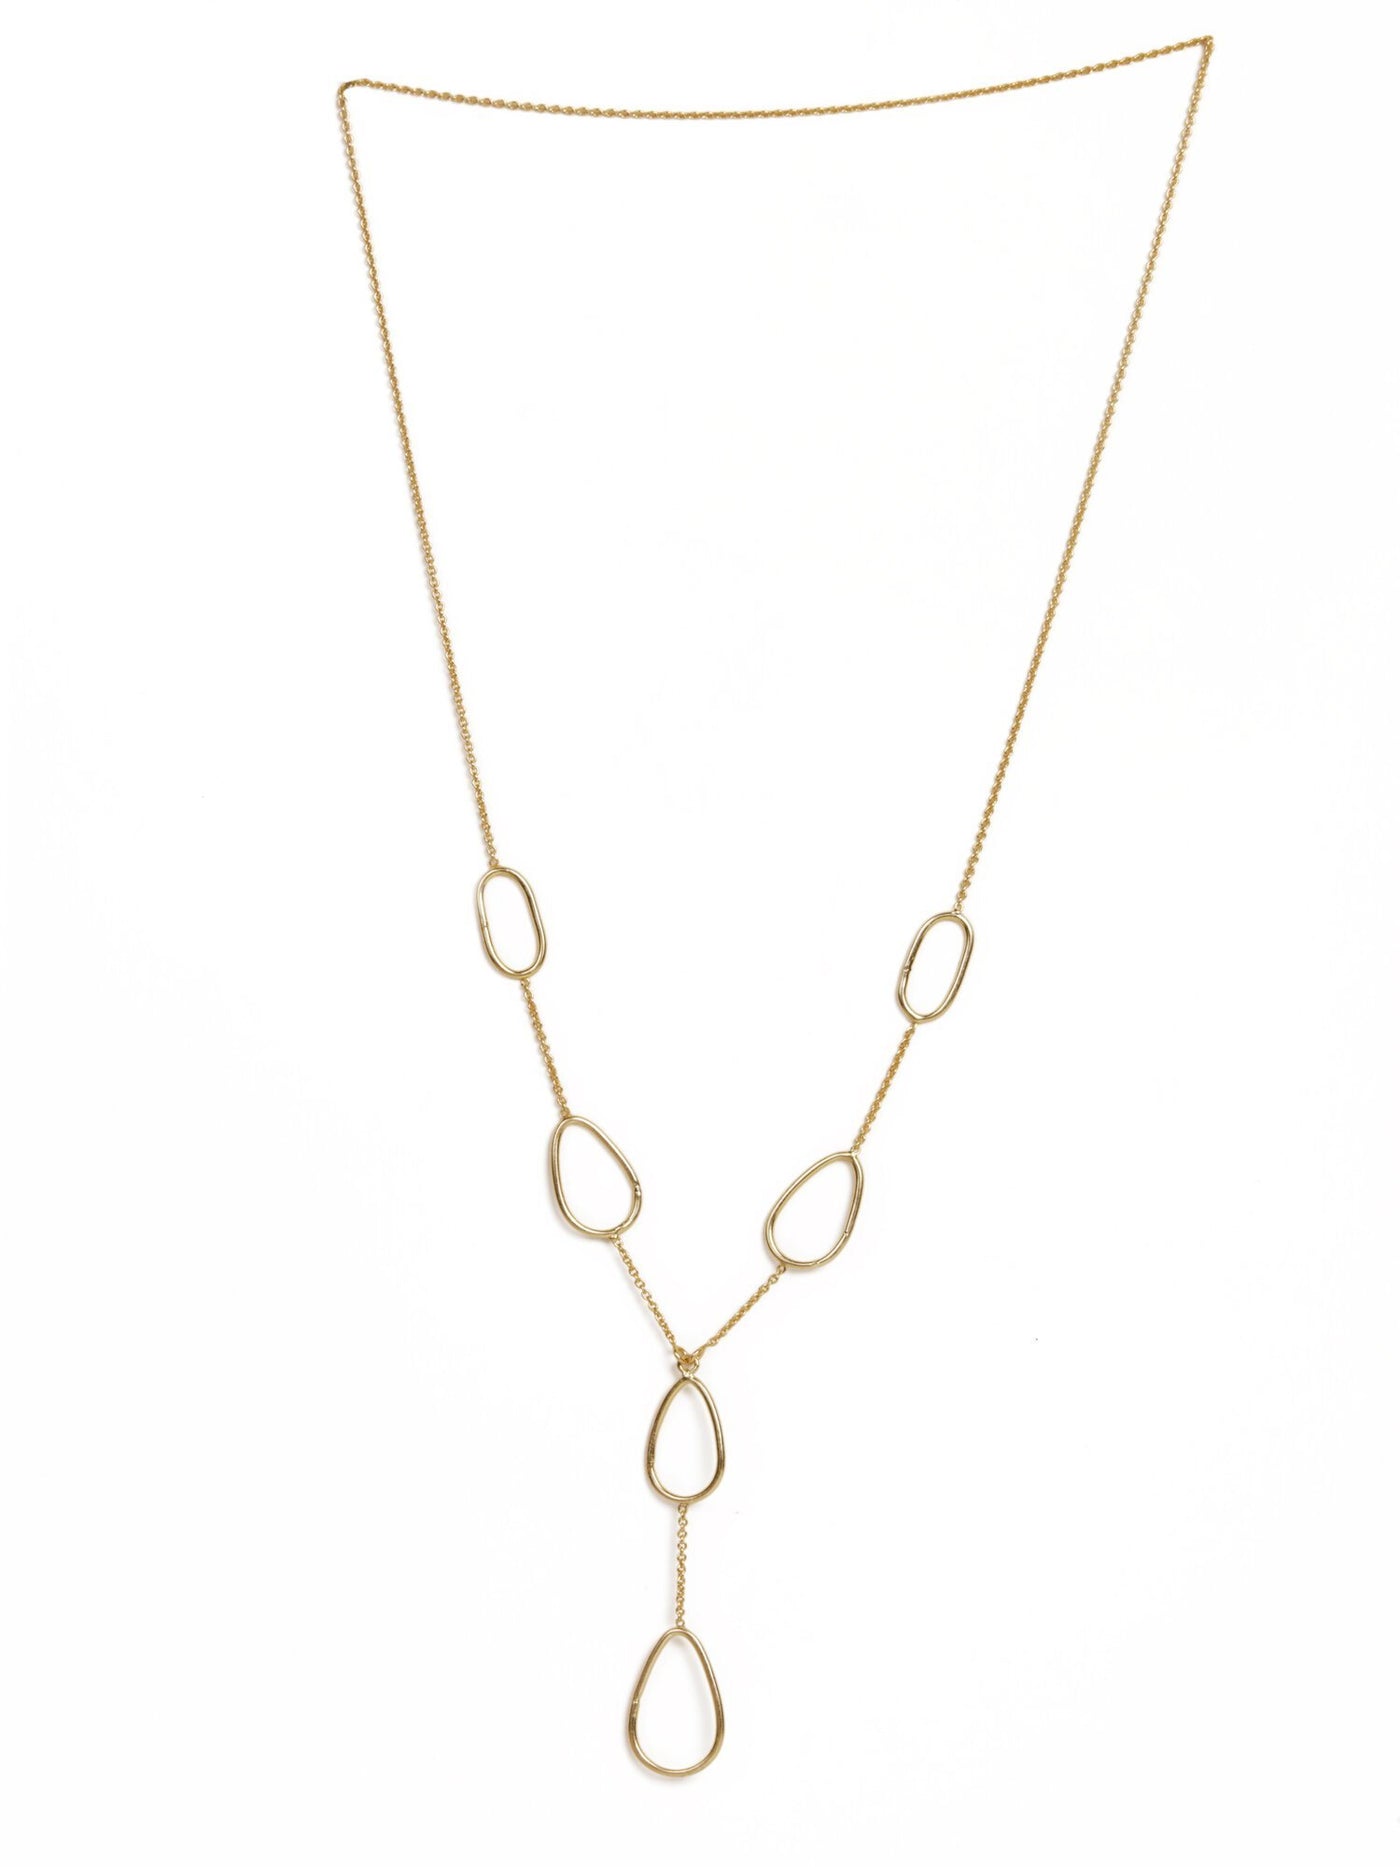 Style Statement Gold Necklace - Stilskii